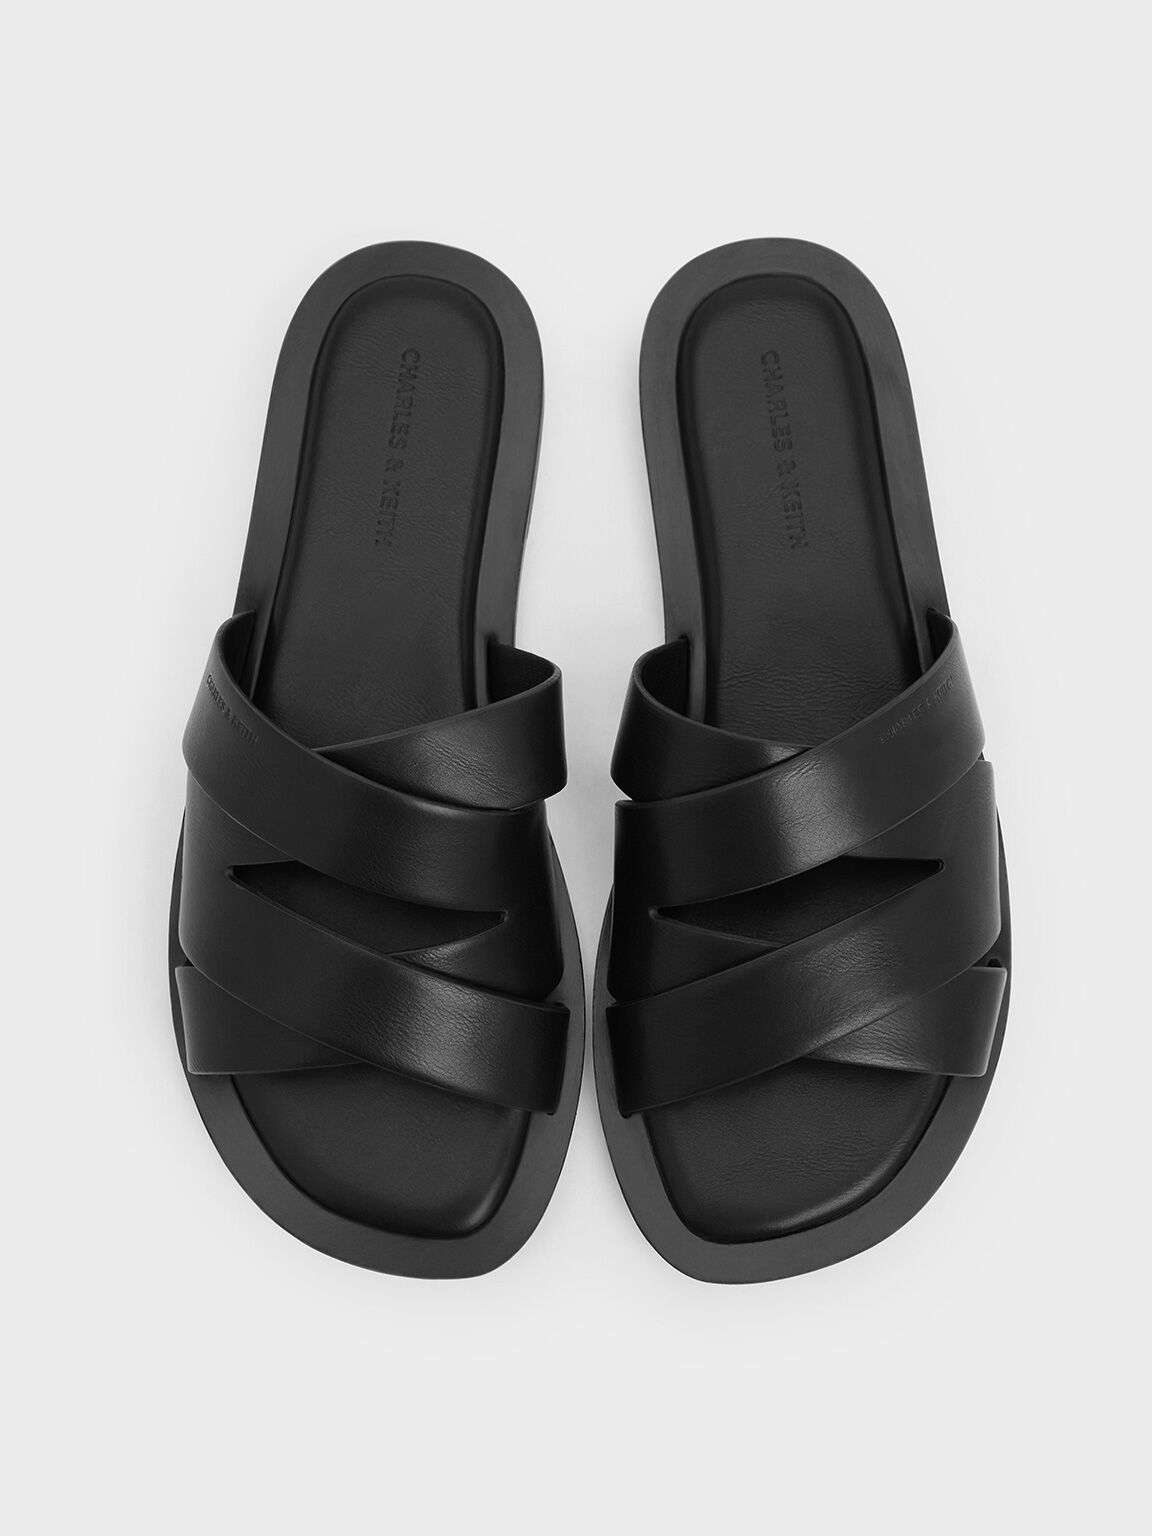 Strappy Crossover Slide Sandals, Black, hi-res